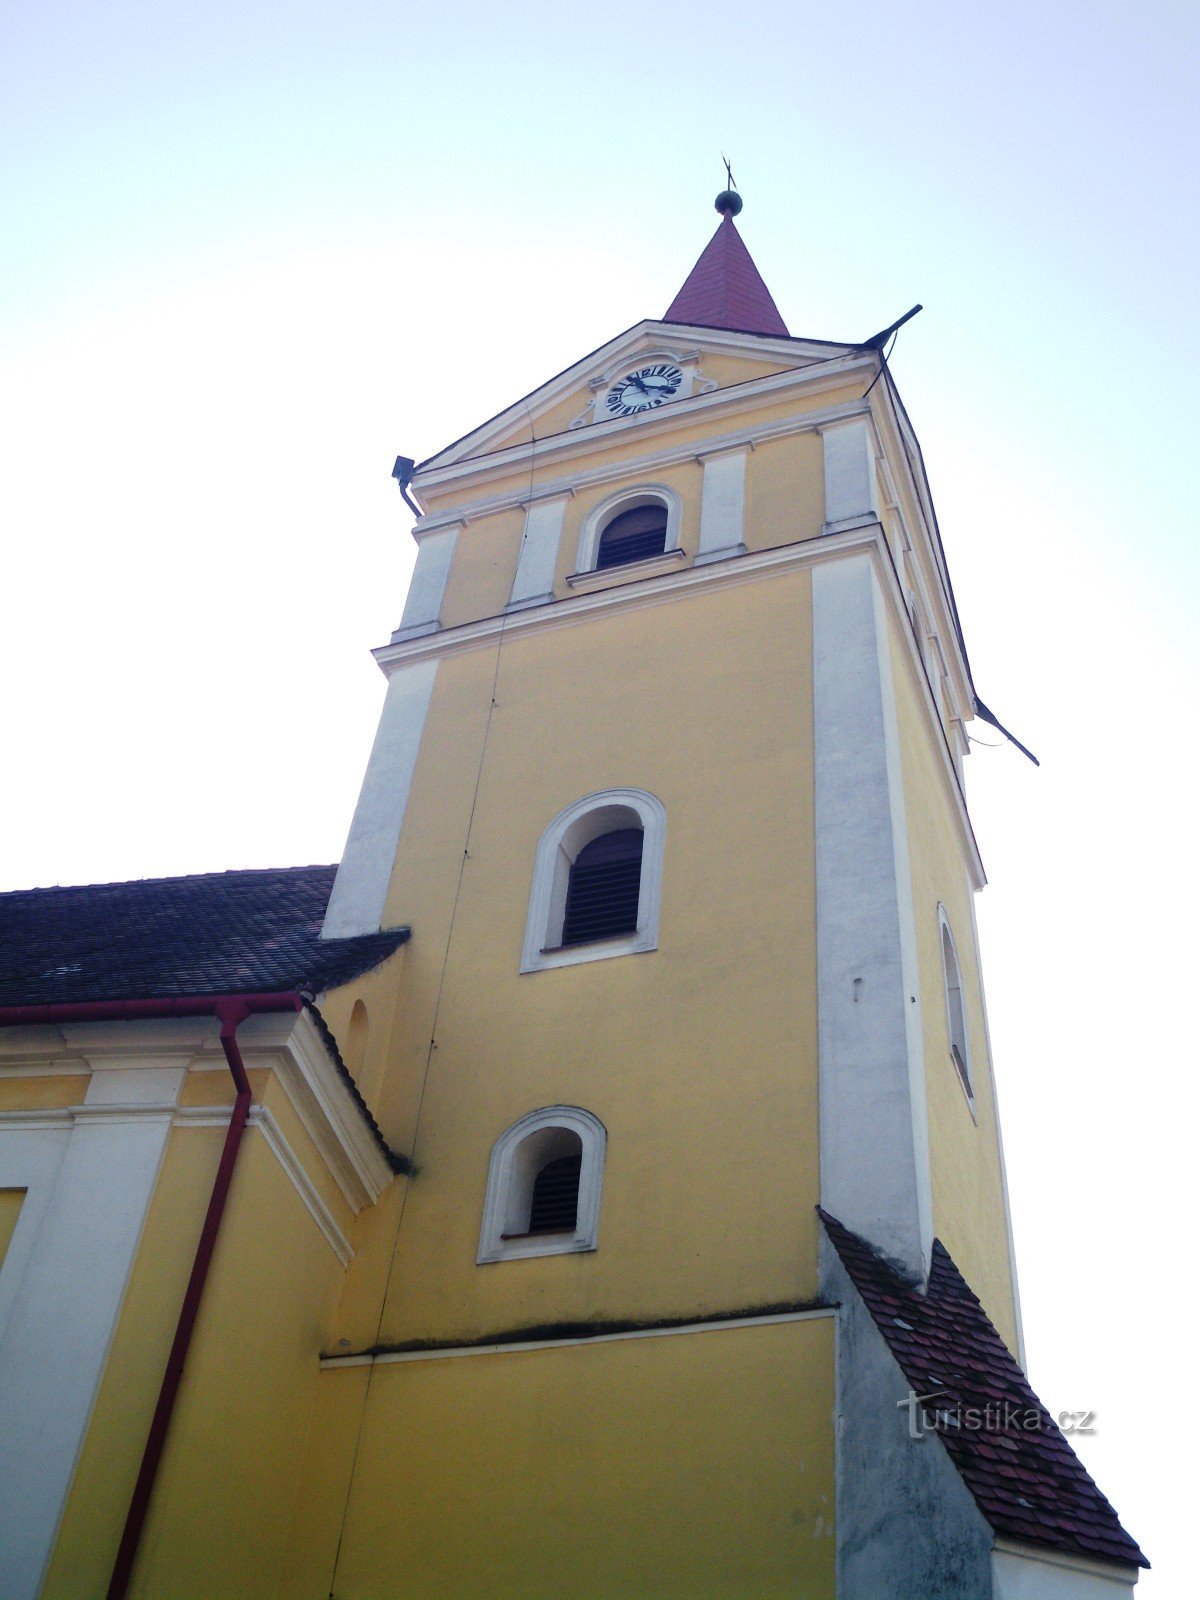 Koryčany - εκκλησία του Αγ. Λαυρέντιος